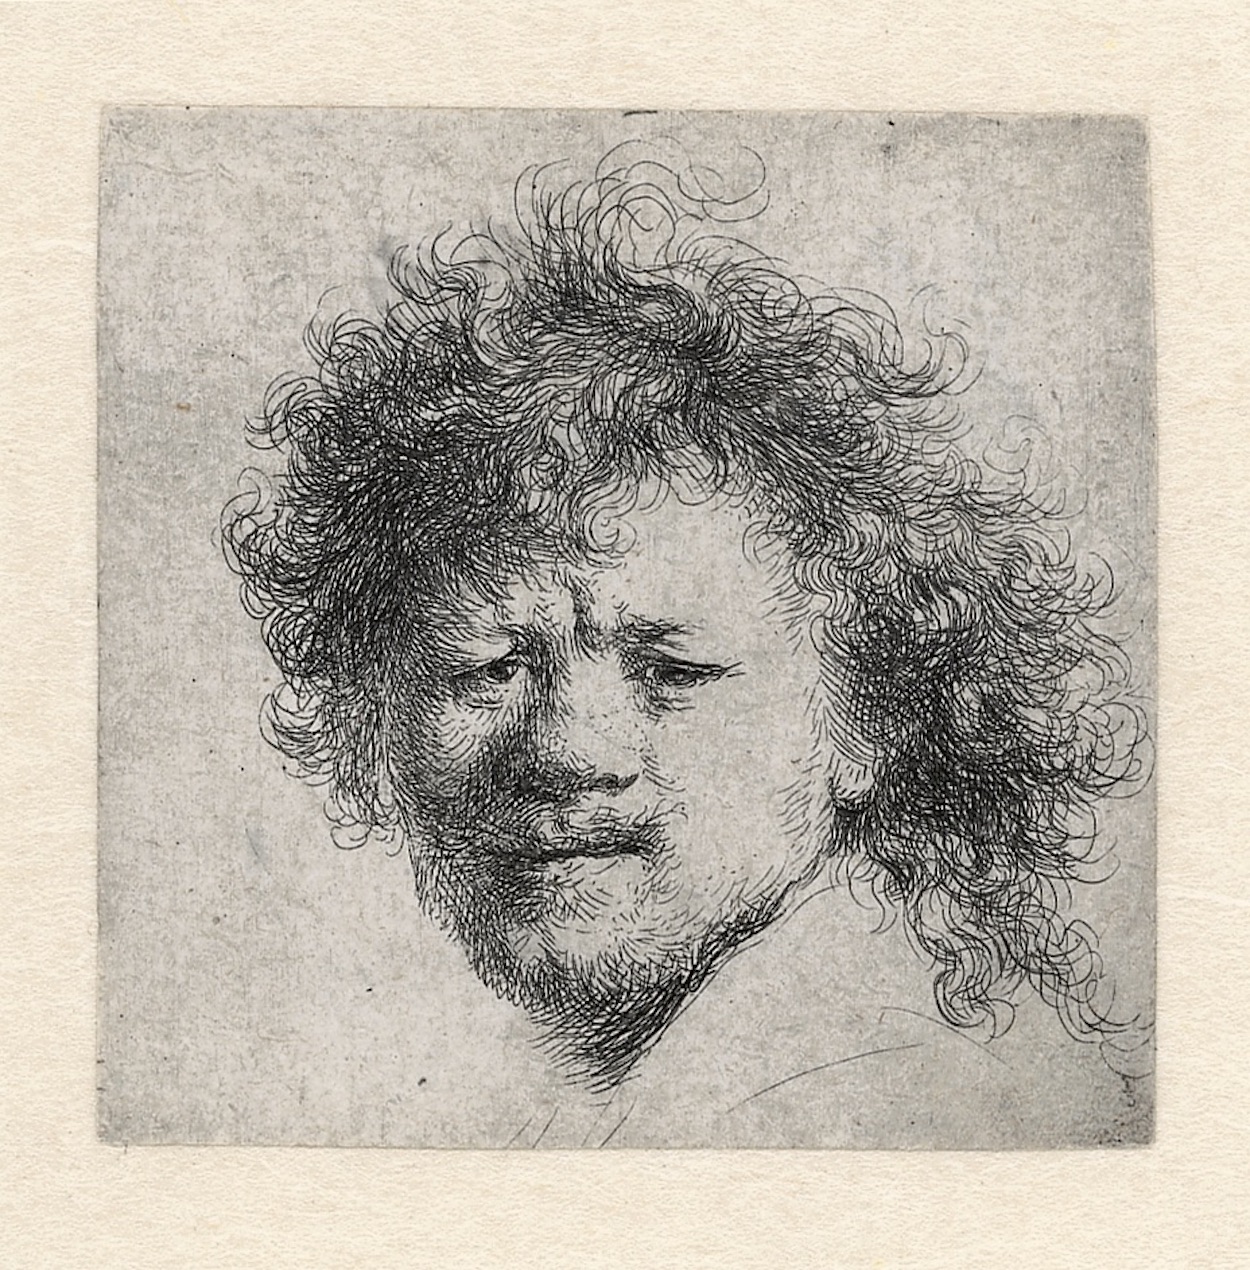 Autoritratto con capelli scompigliati by Rembrandt van Rijn - 1631 circa - 90 × 76 mm Rembrandthuis